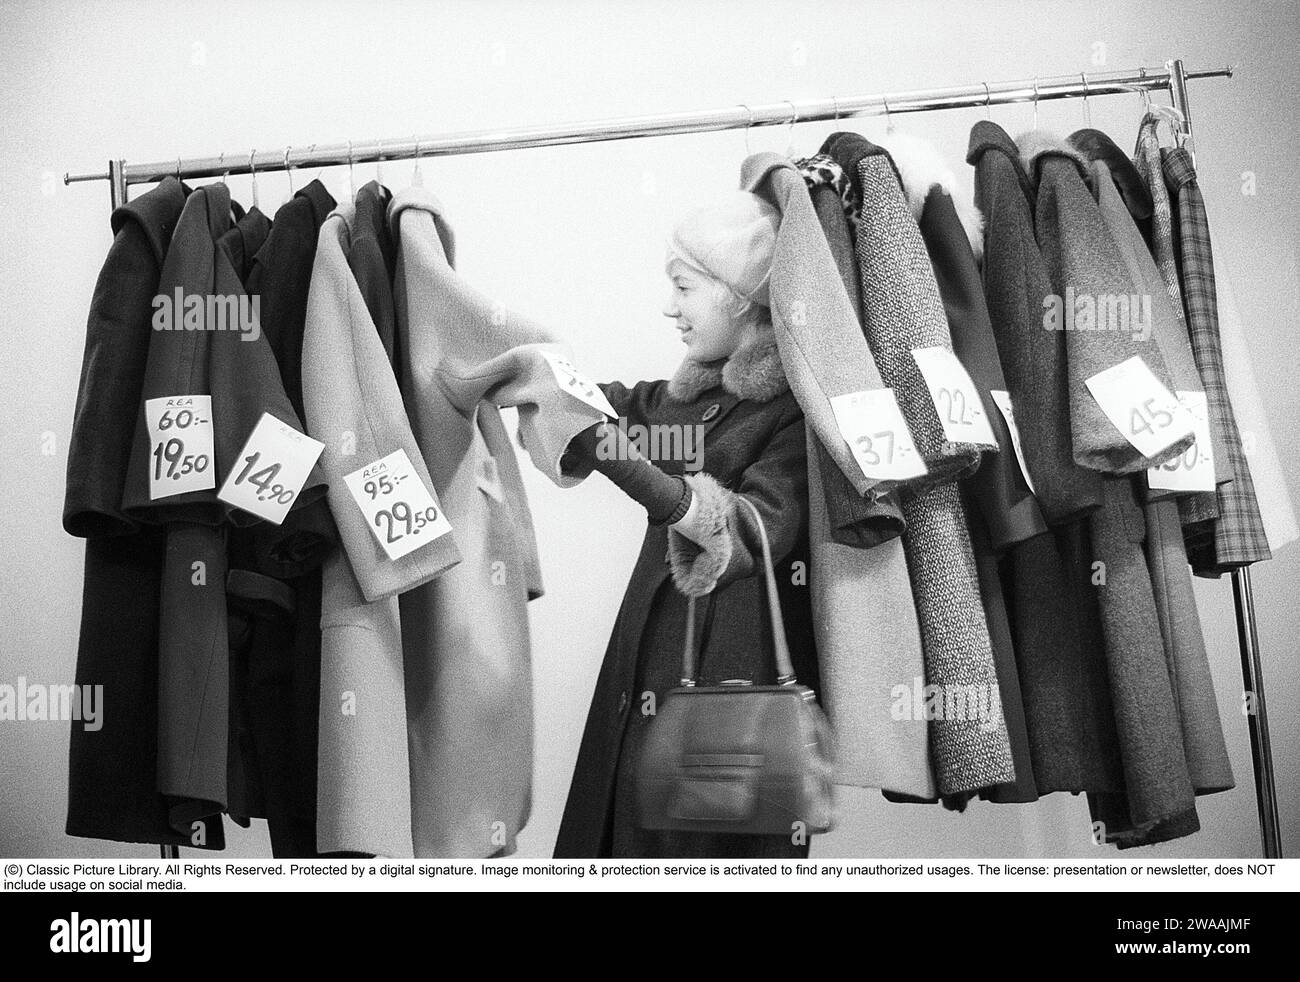 Tolle Rabatte auf Oberbekleidung in den 1960ern Eine Frau steht an einem Kleiderständer und wählt aus Oberbekleidung und Mänteln, die mit Preisschildern mit ermäßigten Preisen gekennzeichnet sind. Nach ihrem Gesicht zu urteilen, schätzt sie die reduzierten Preise und denkt, sie bekommt echte Schnäppchen. Schweden Januar 1963. Ref. CV28 Stockfoto